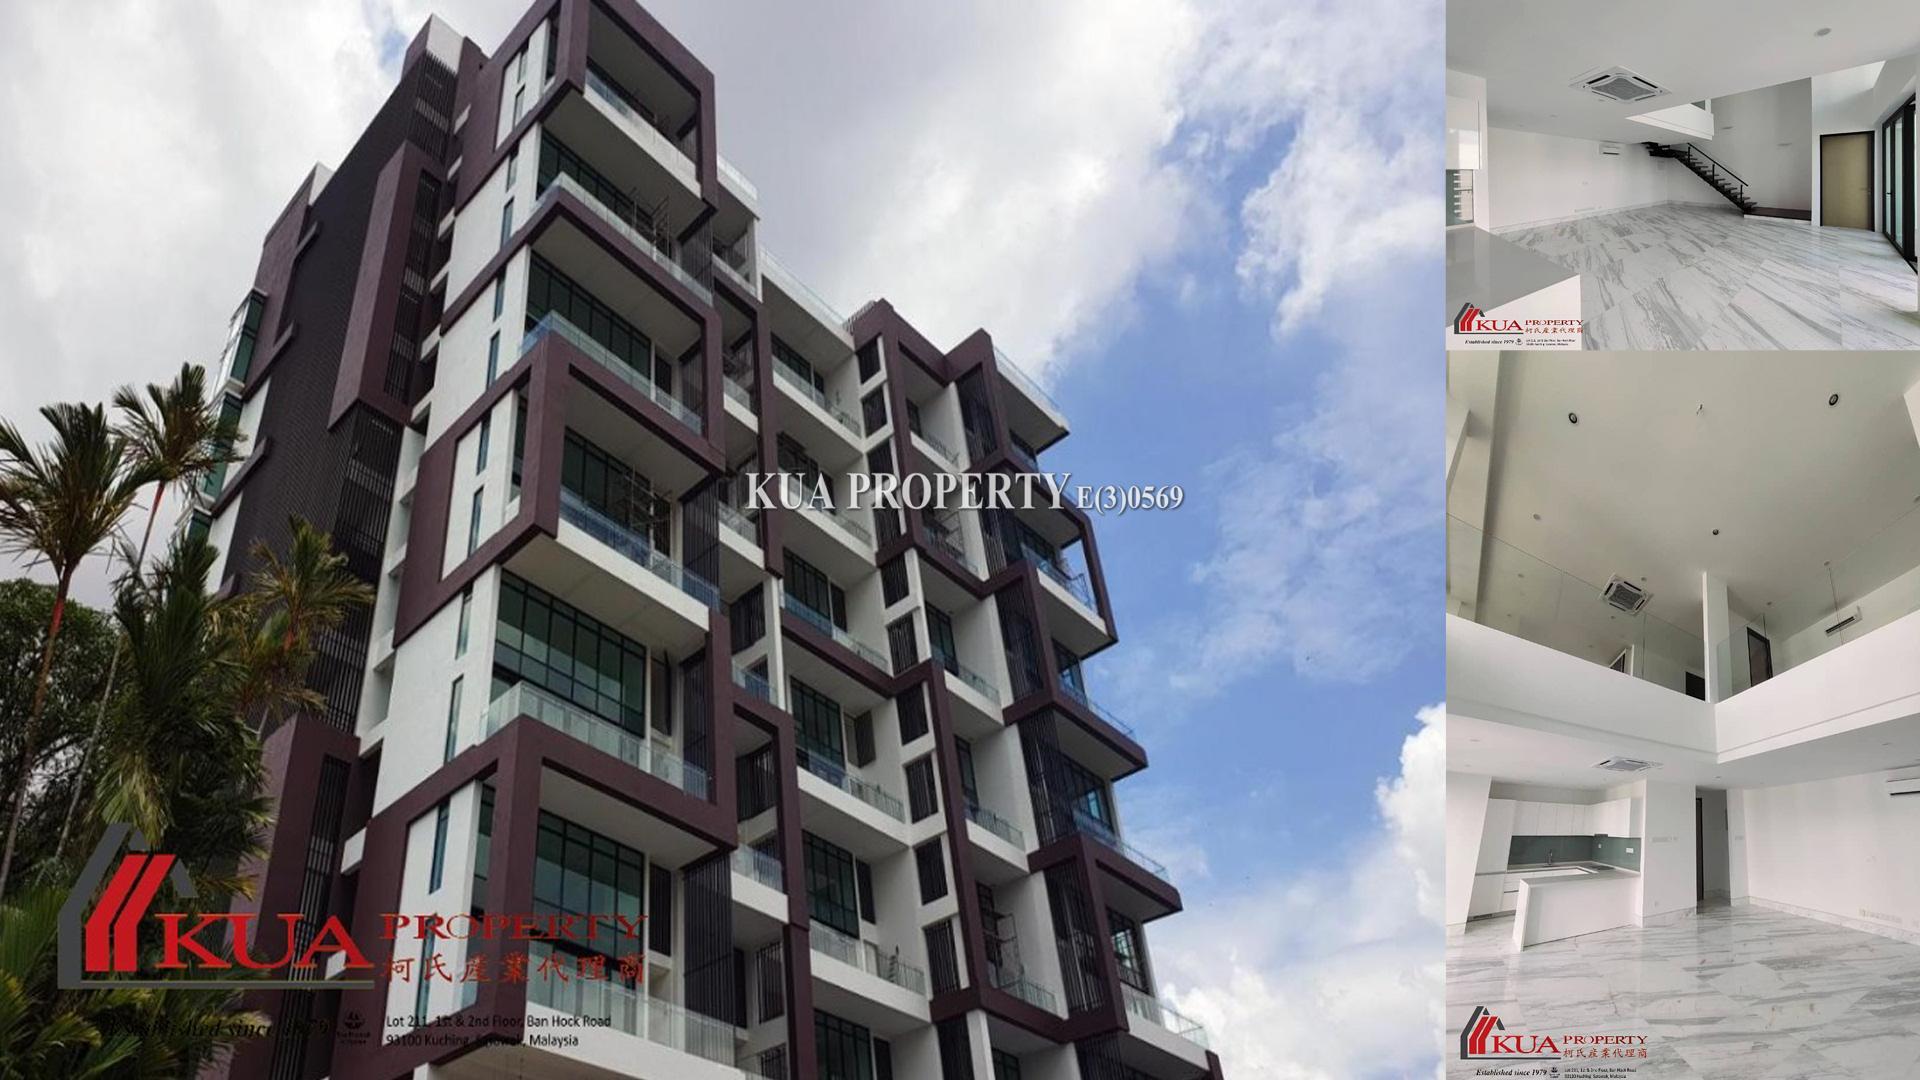 Lagenda Condominium (Soho Duplex) For Sale! 📍Located at Bukit Mata, Kuching